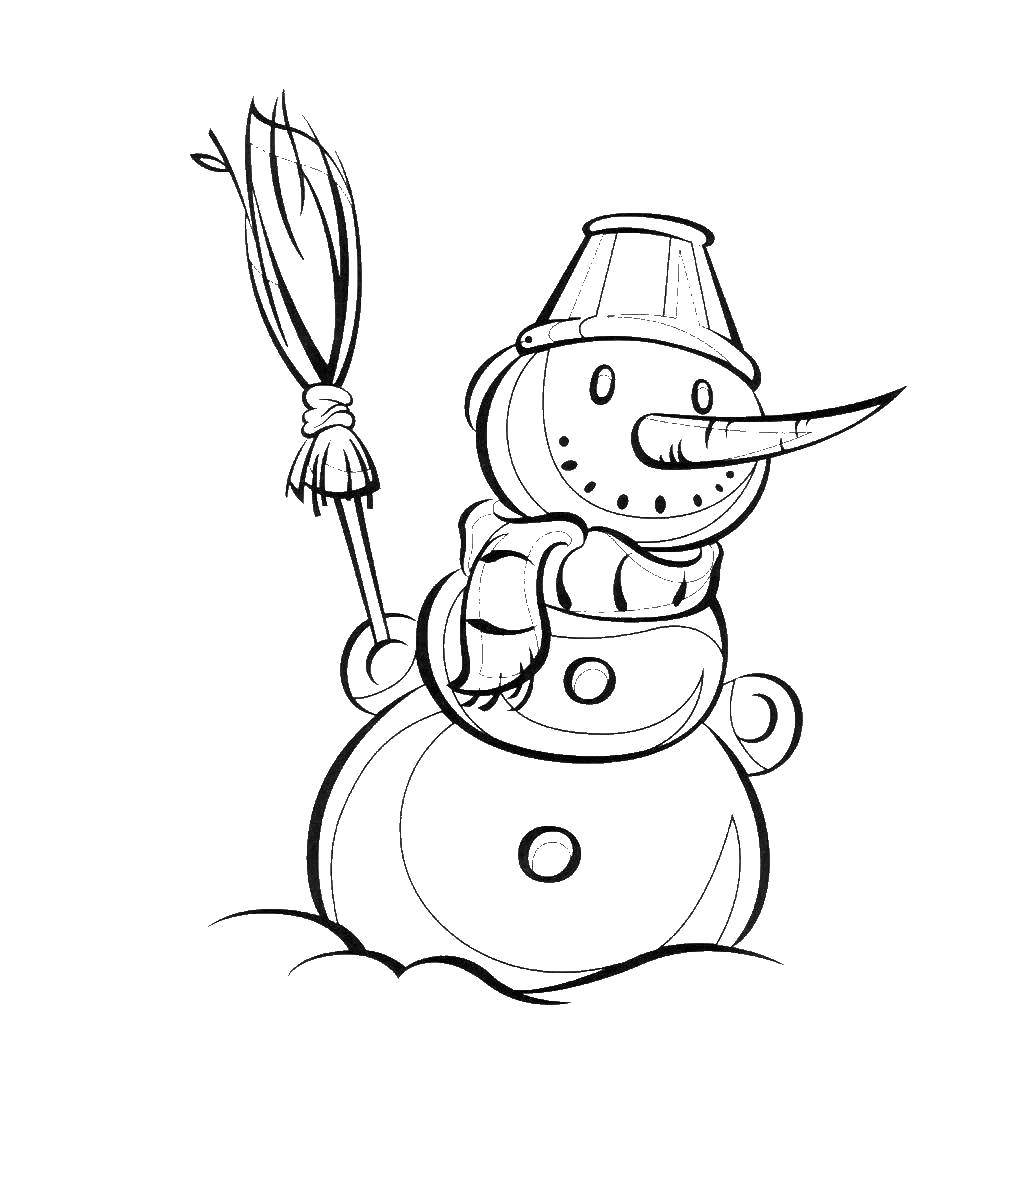 Раскраска зимы с изображением снеговика и снега (снеговик, снег, развлечение)